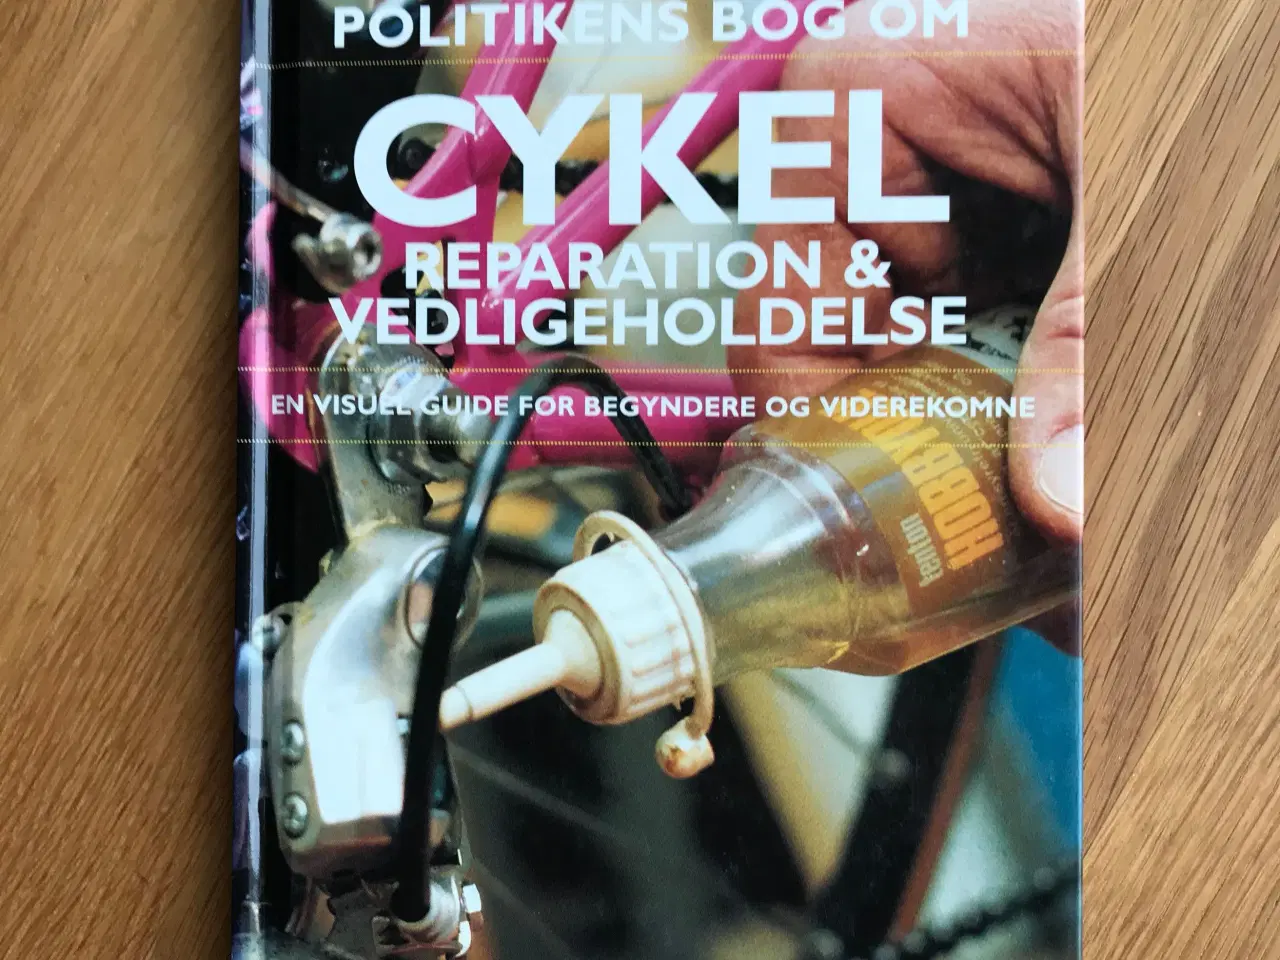 Billede 1 - Politikens bog om Cykelreparation & Vedligeholdels